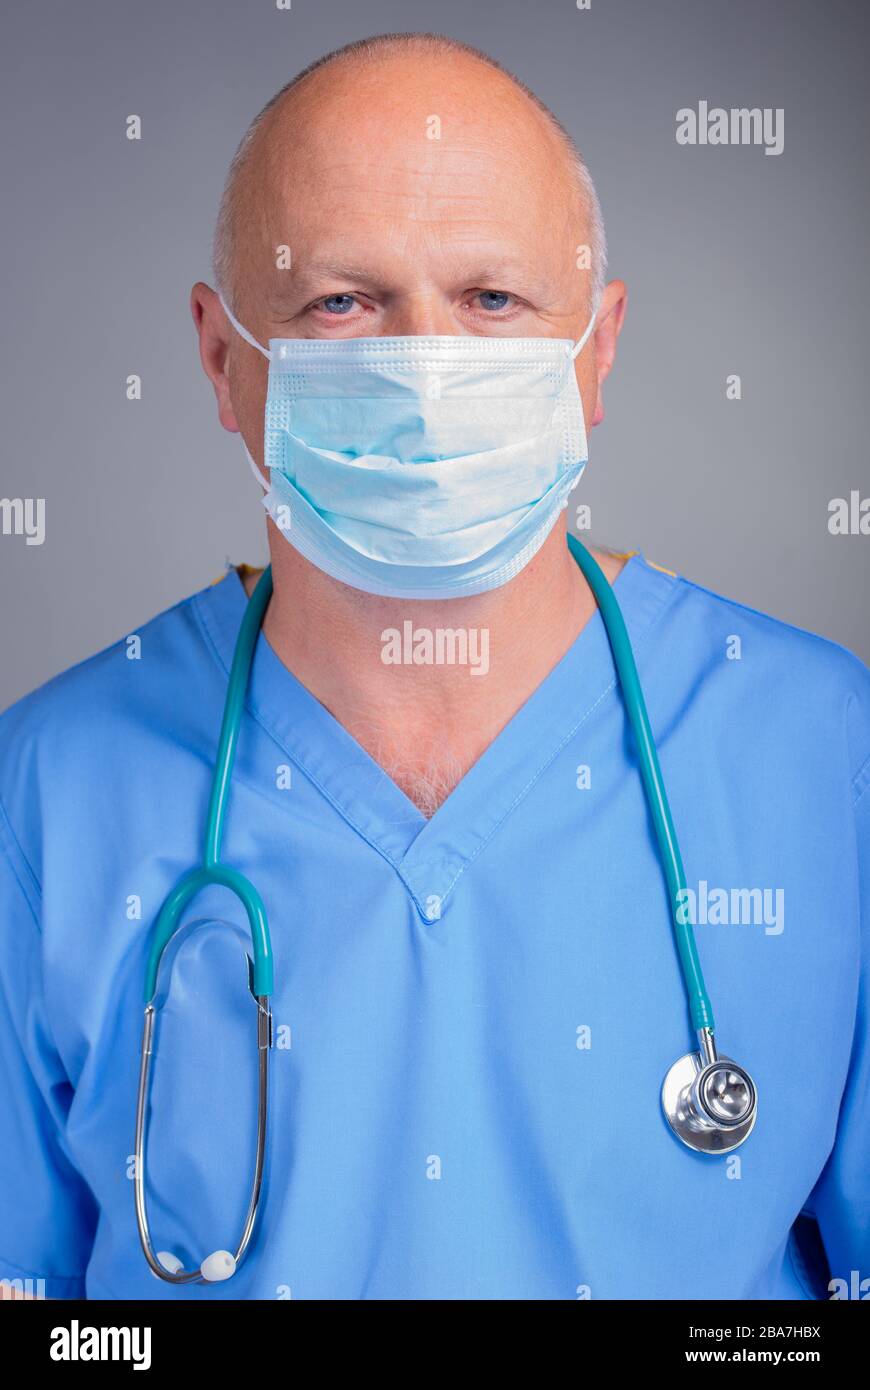 Portrait d'un médecin de l'hôpital caucasien dans des gommages bleus, en regardant le spectateur et en portant un masque chirurgical avec un stéthoscope, sur un fond gris. Banque D'Images